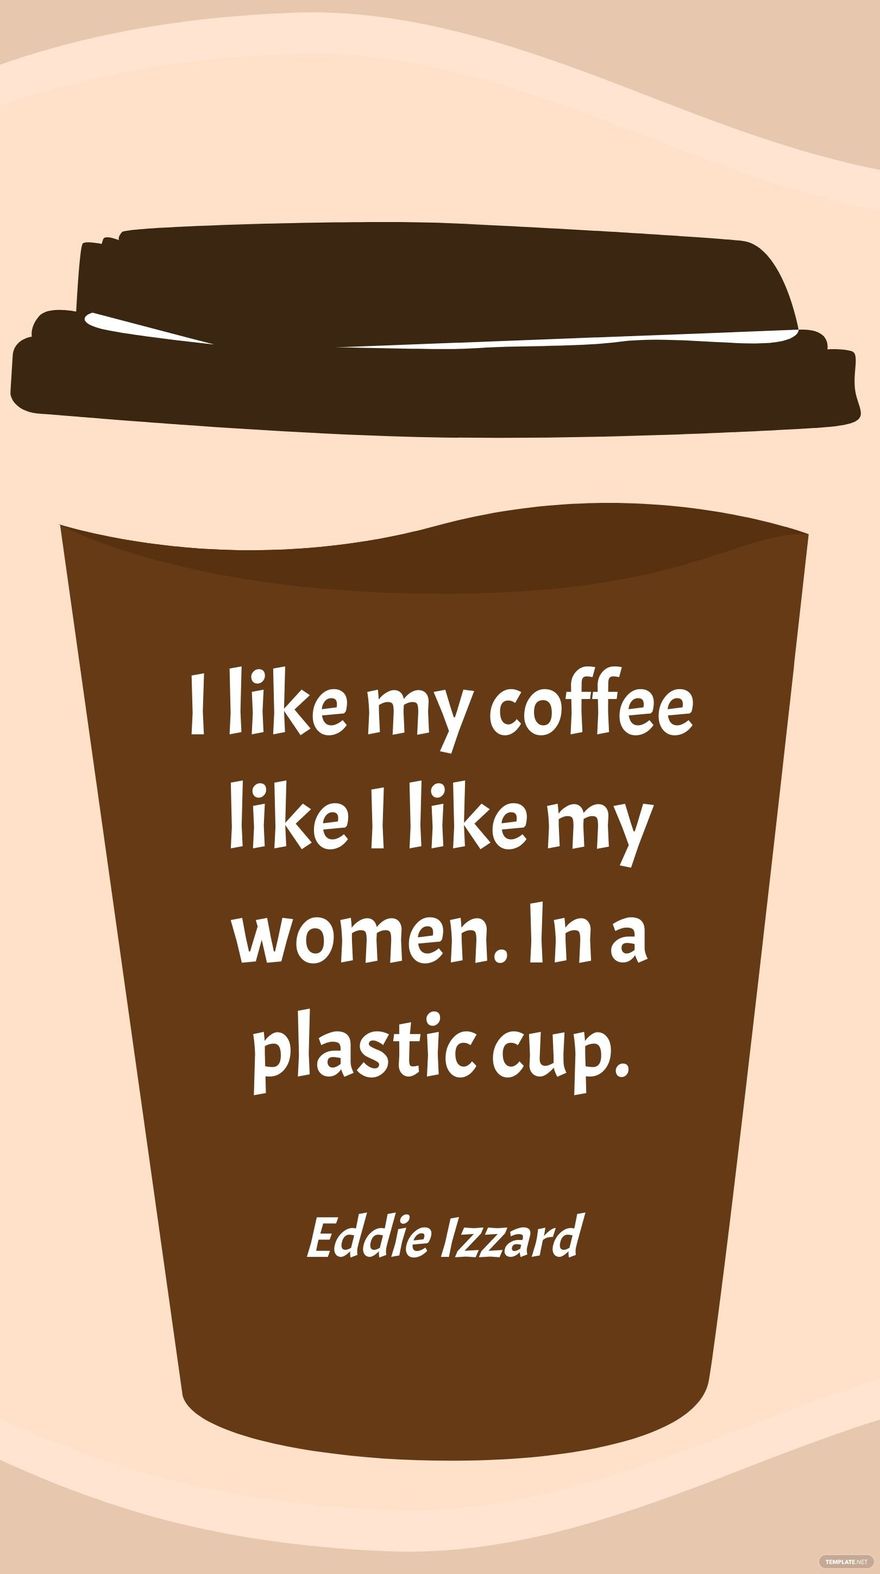 Free Eddie Izzard - I like my coffee like I like my women. In a plastic cup. in JPG